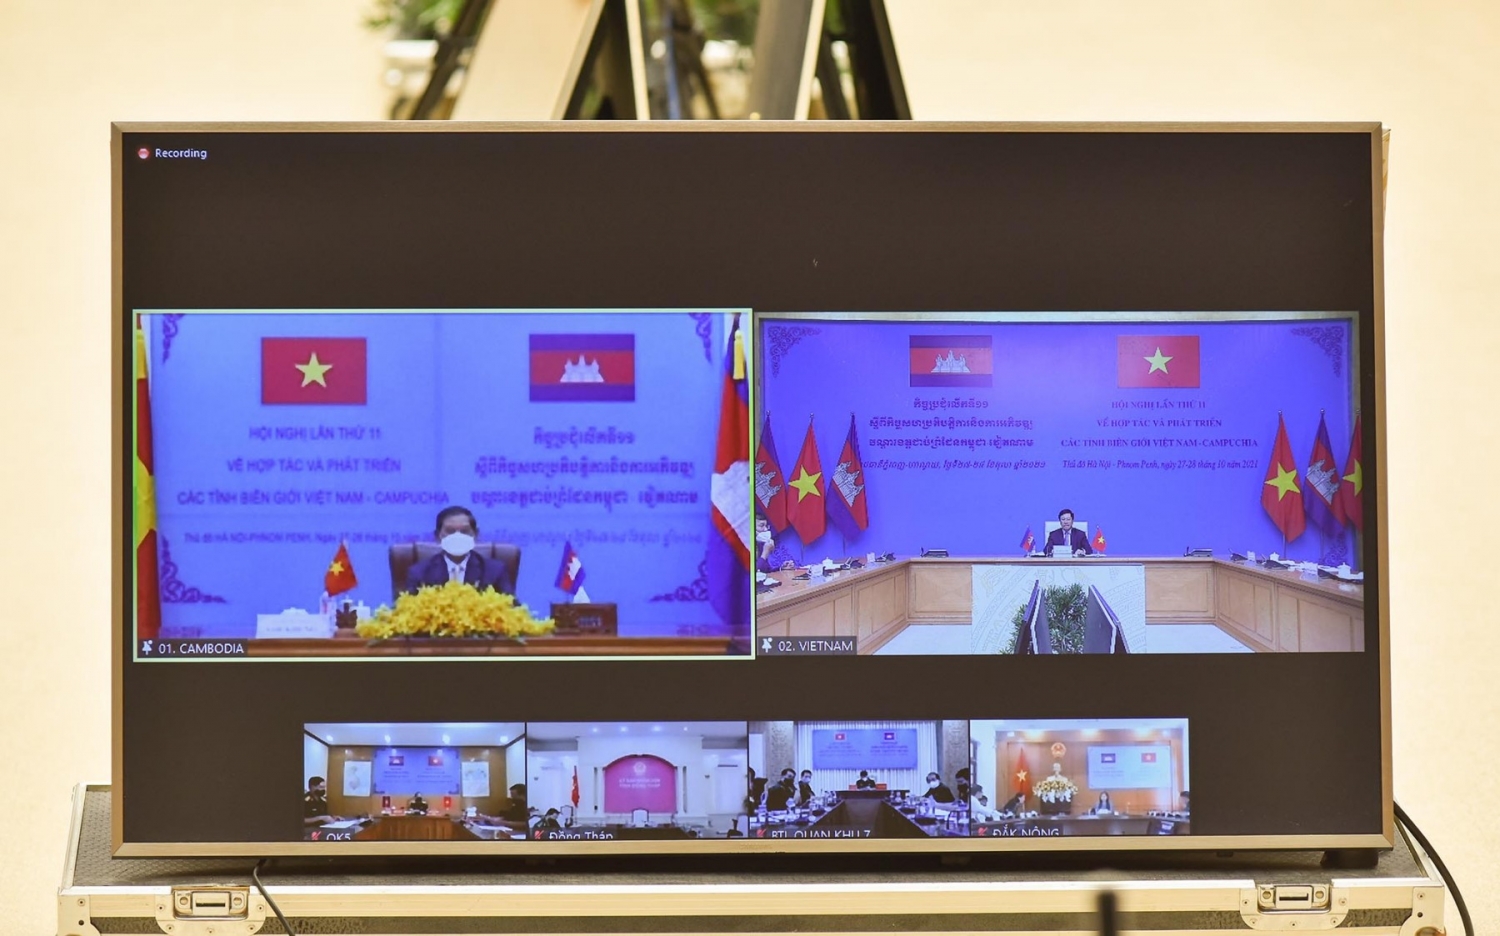 Hội nghị Hợp tác và Phát triển các tỉnh biên giới Việt Nam - Campuchia lần thứ 11